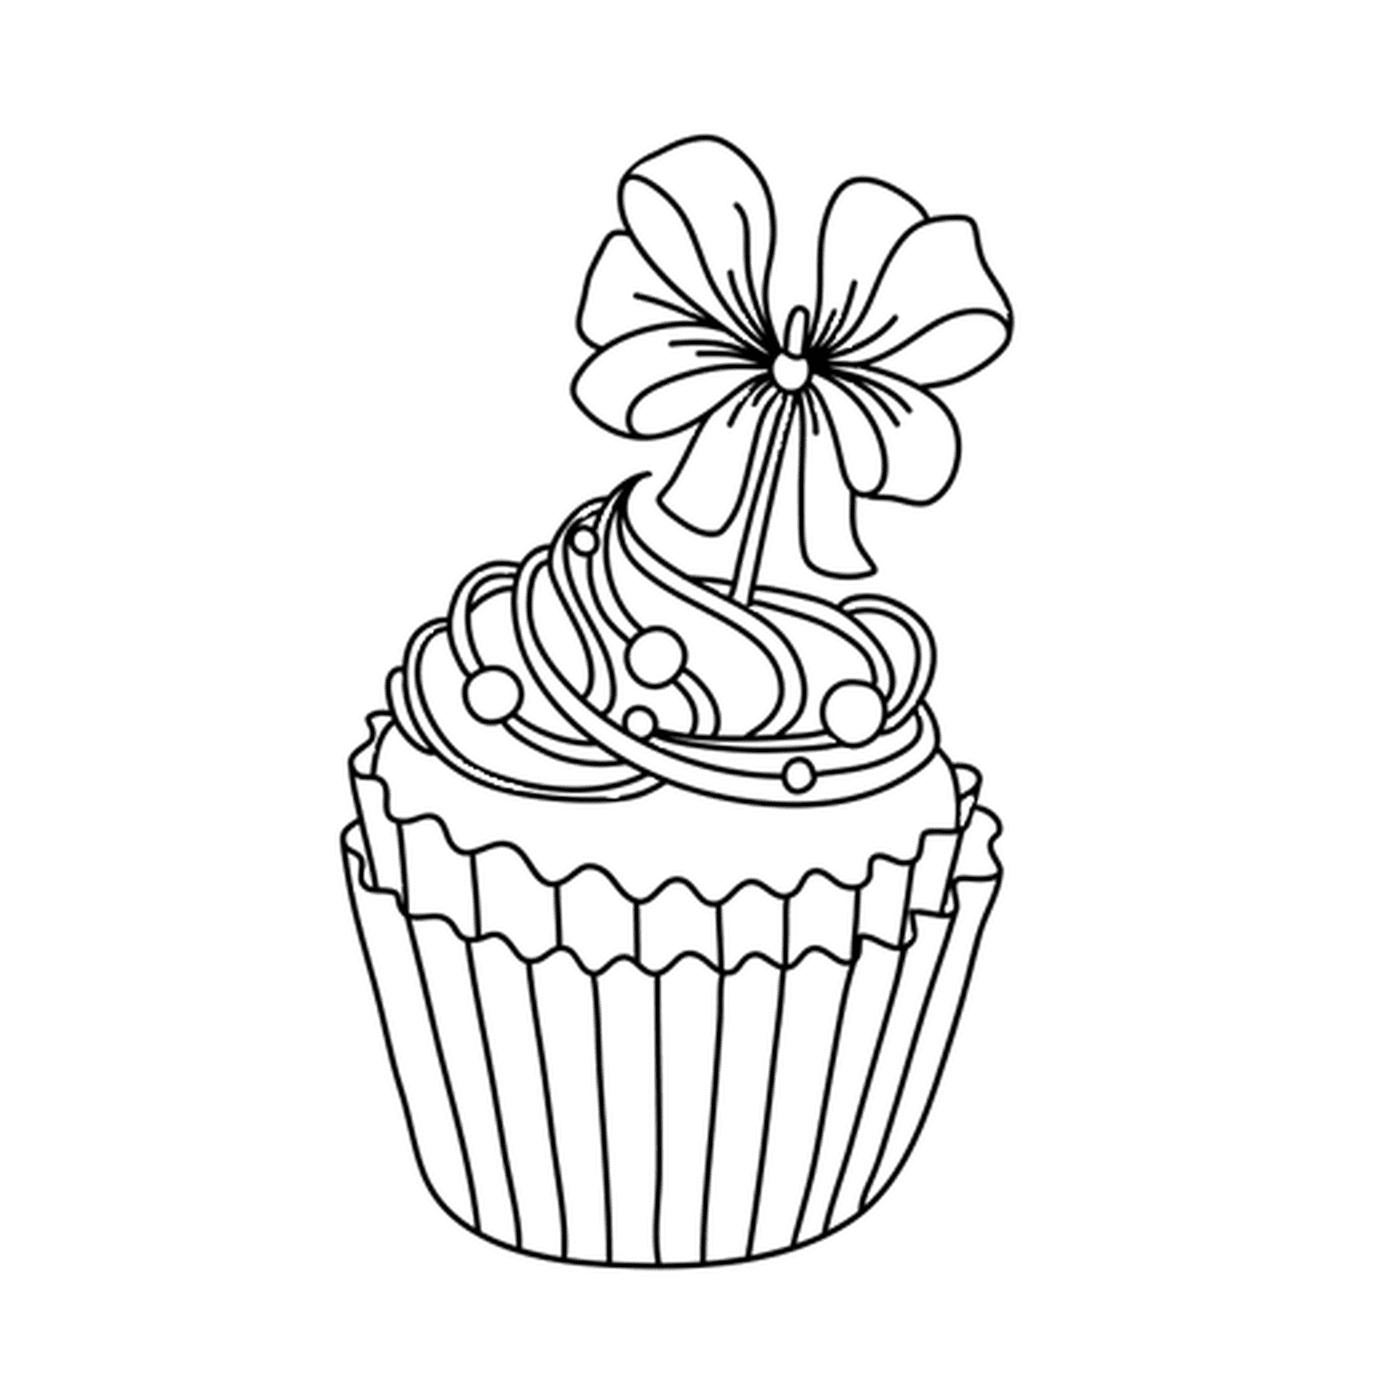  Un cupcake festoso da mangiare, con un fiore 